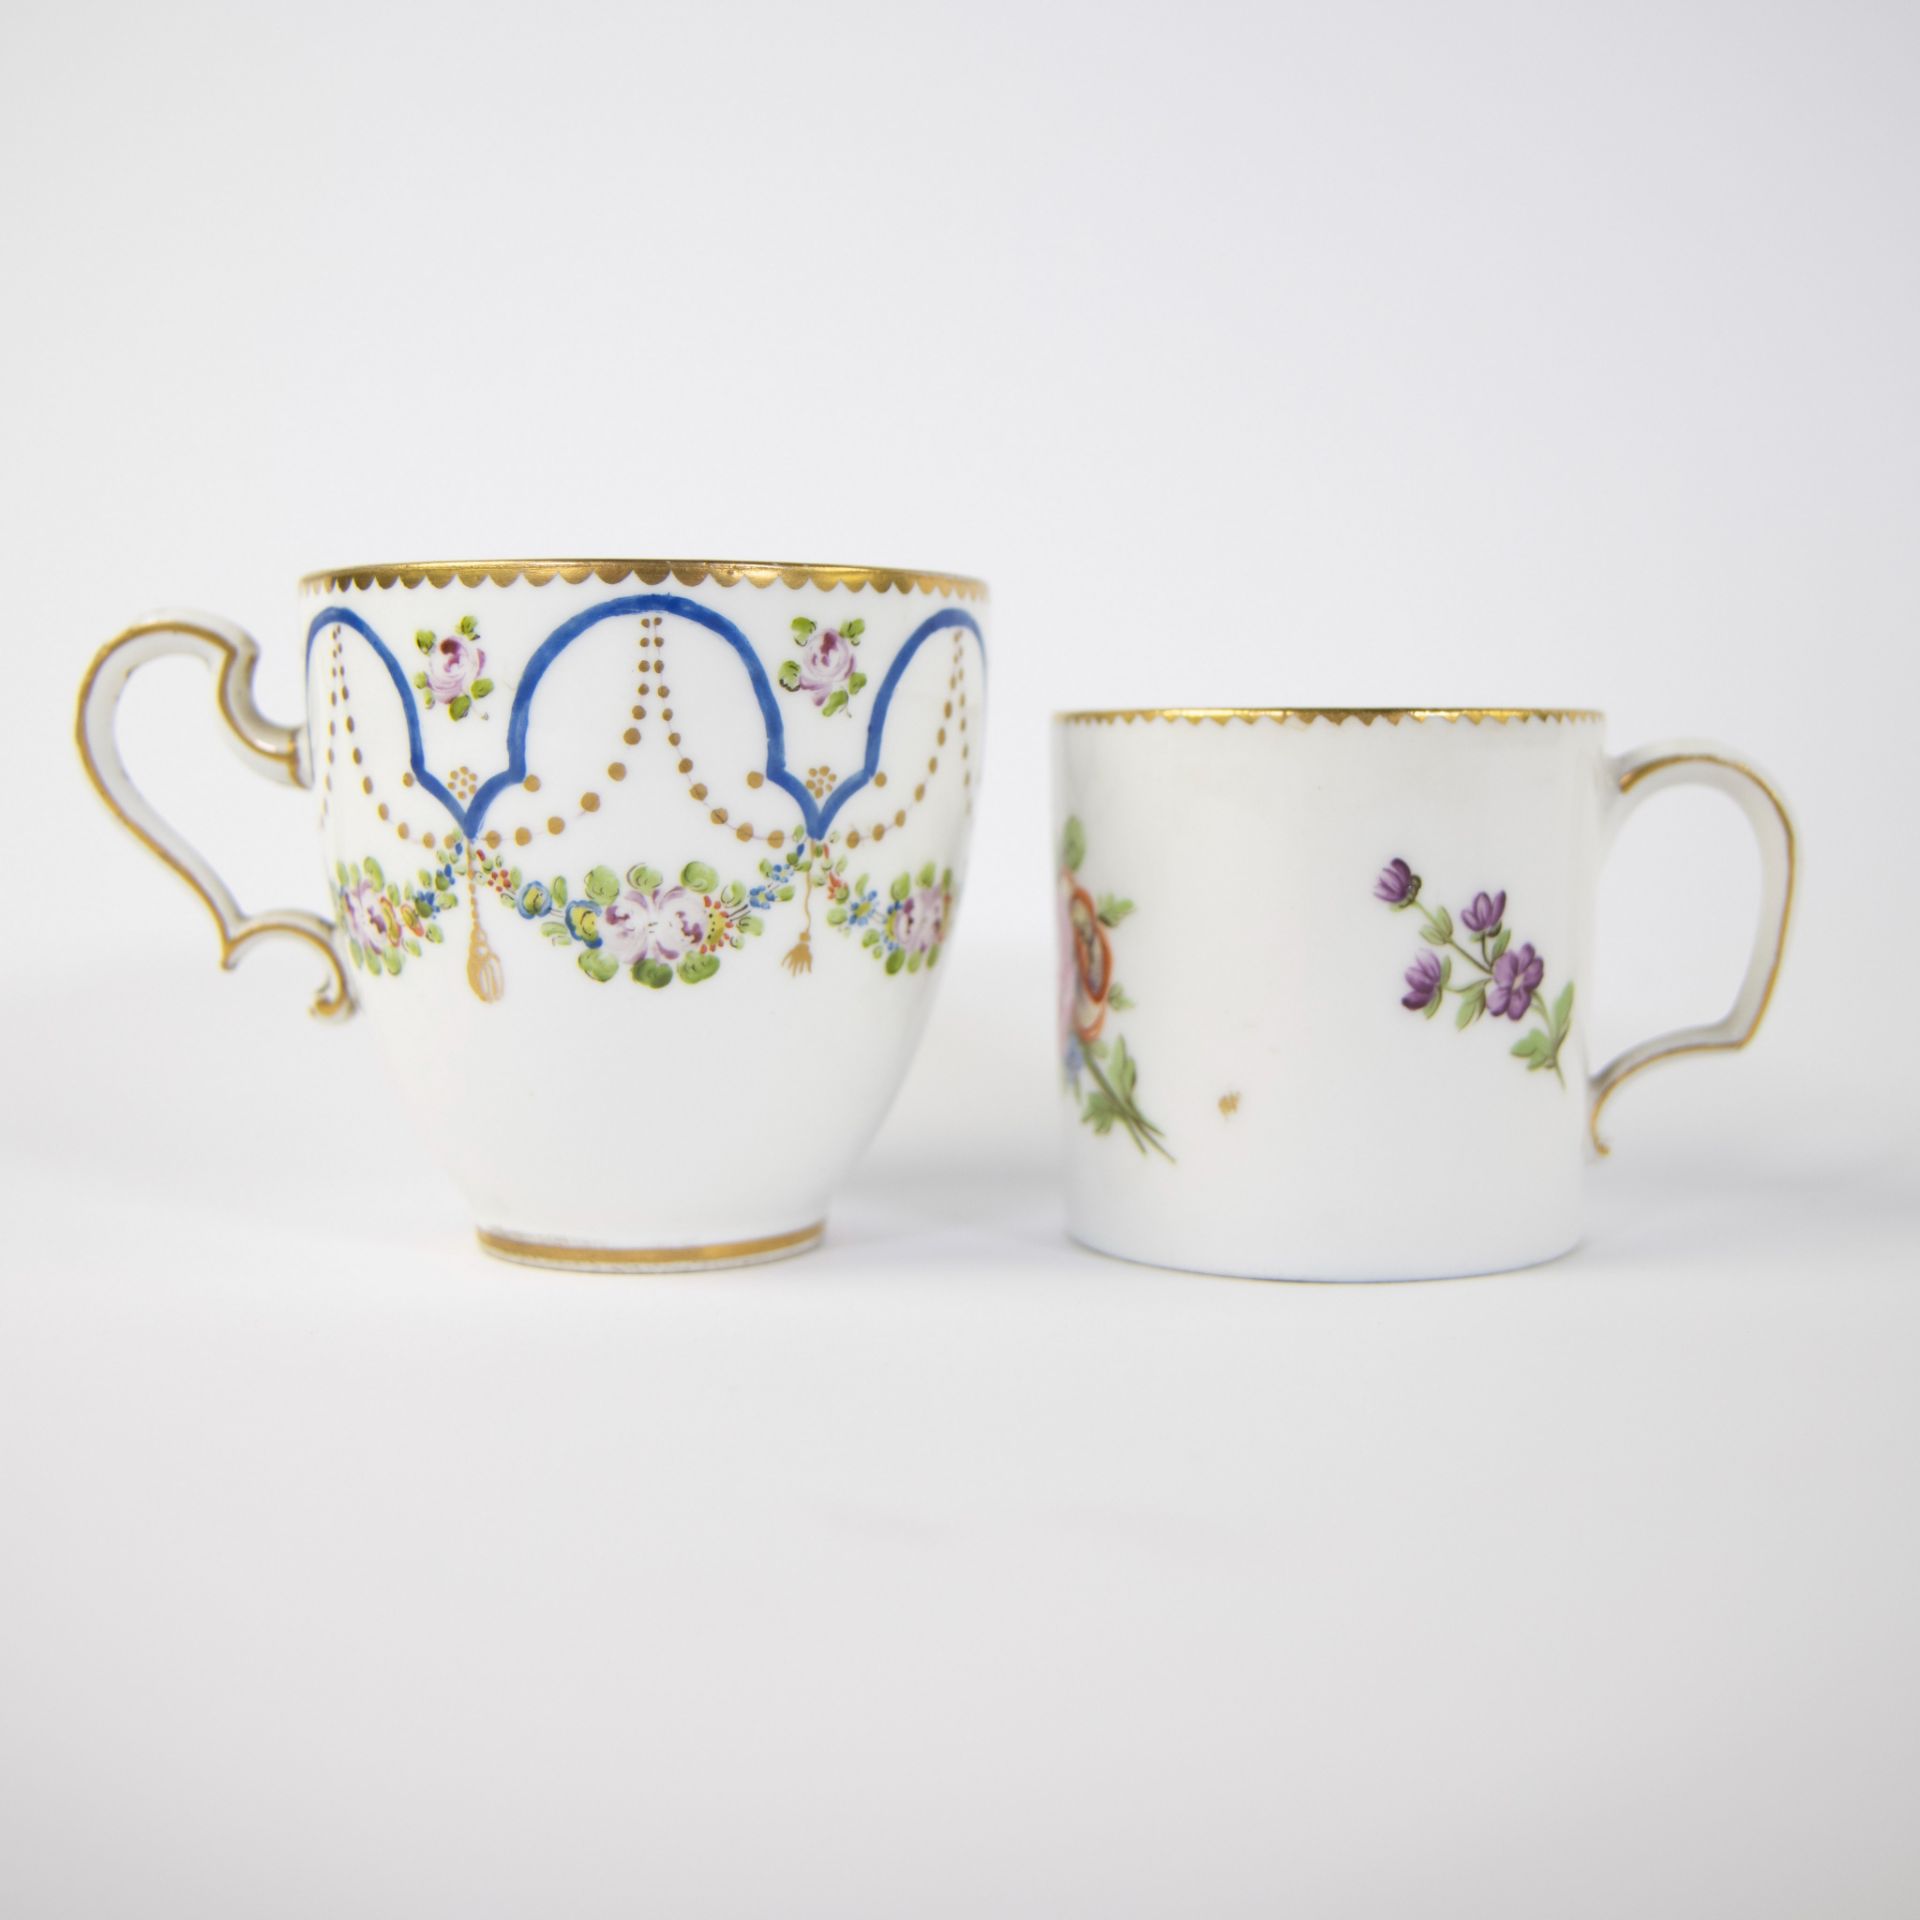 Cup and saucer Sèvres circa 1770 and Vieux Paris circa 1790 - Image 2 of 6